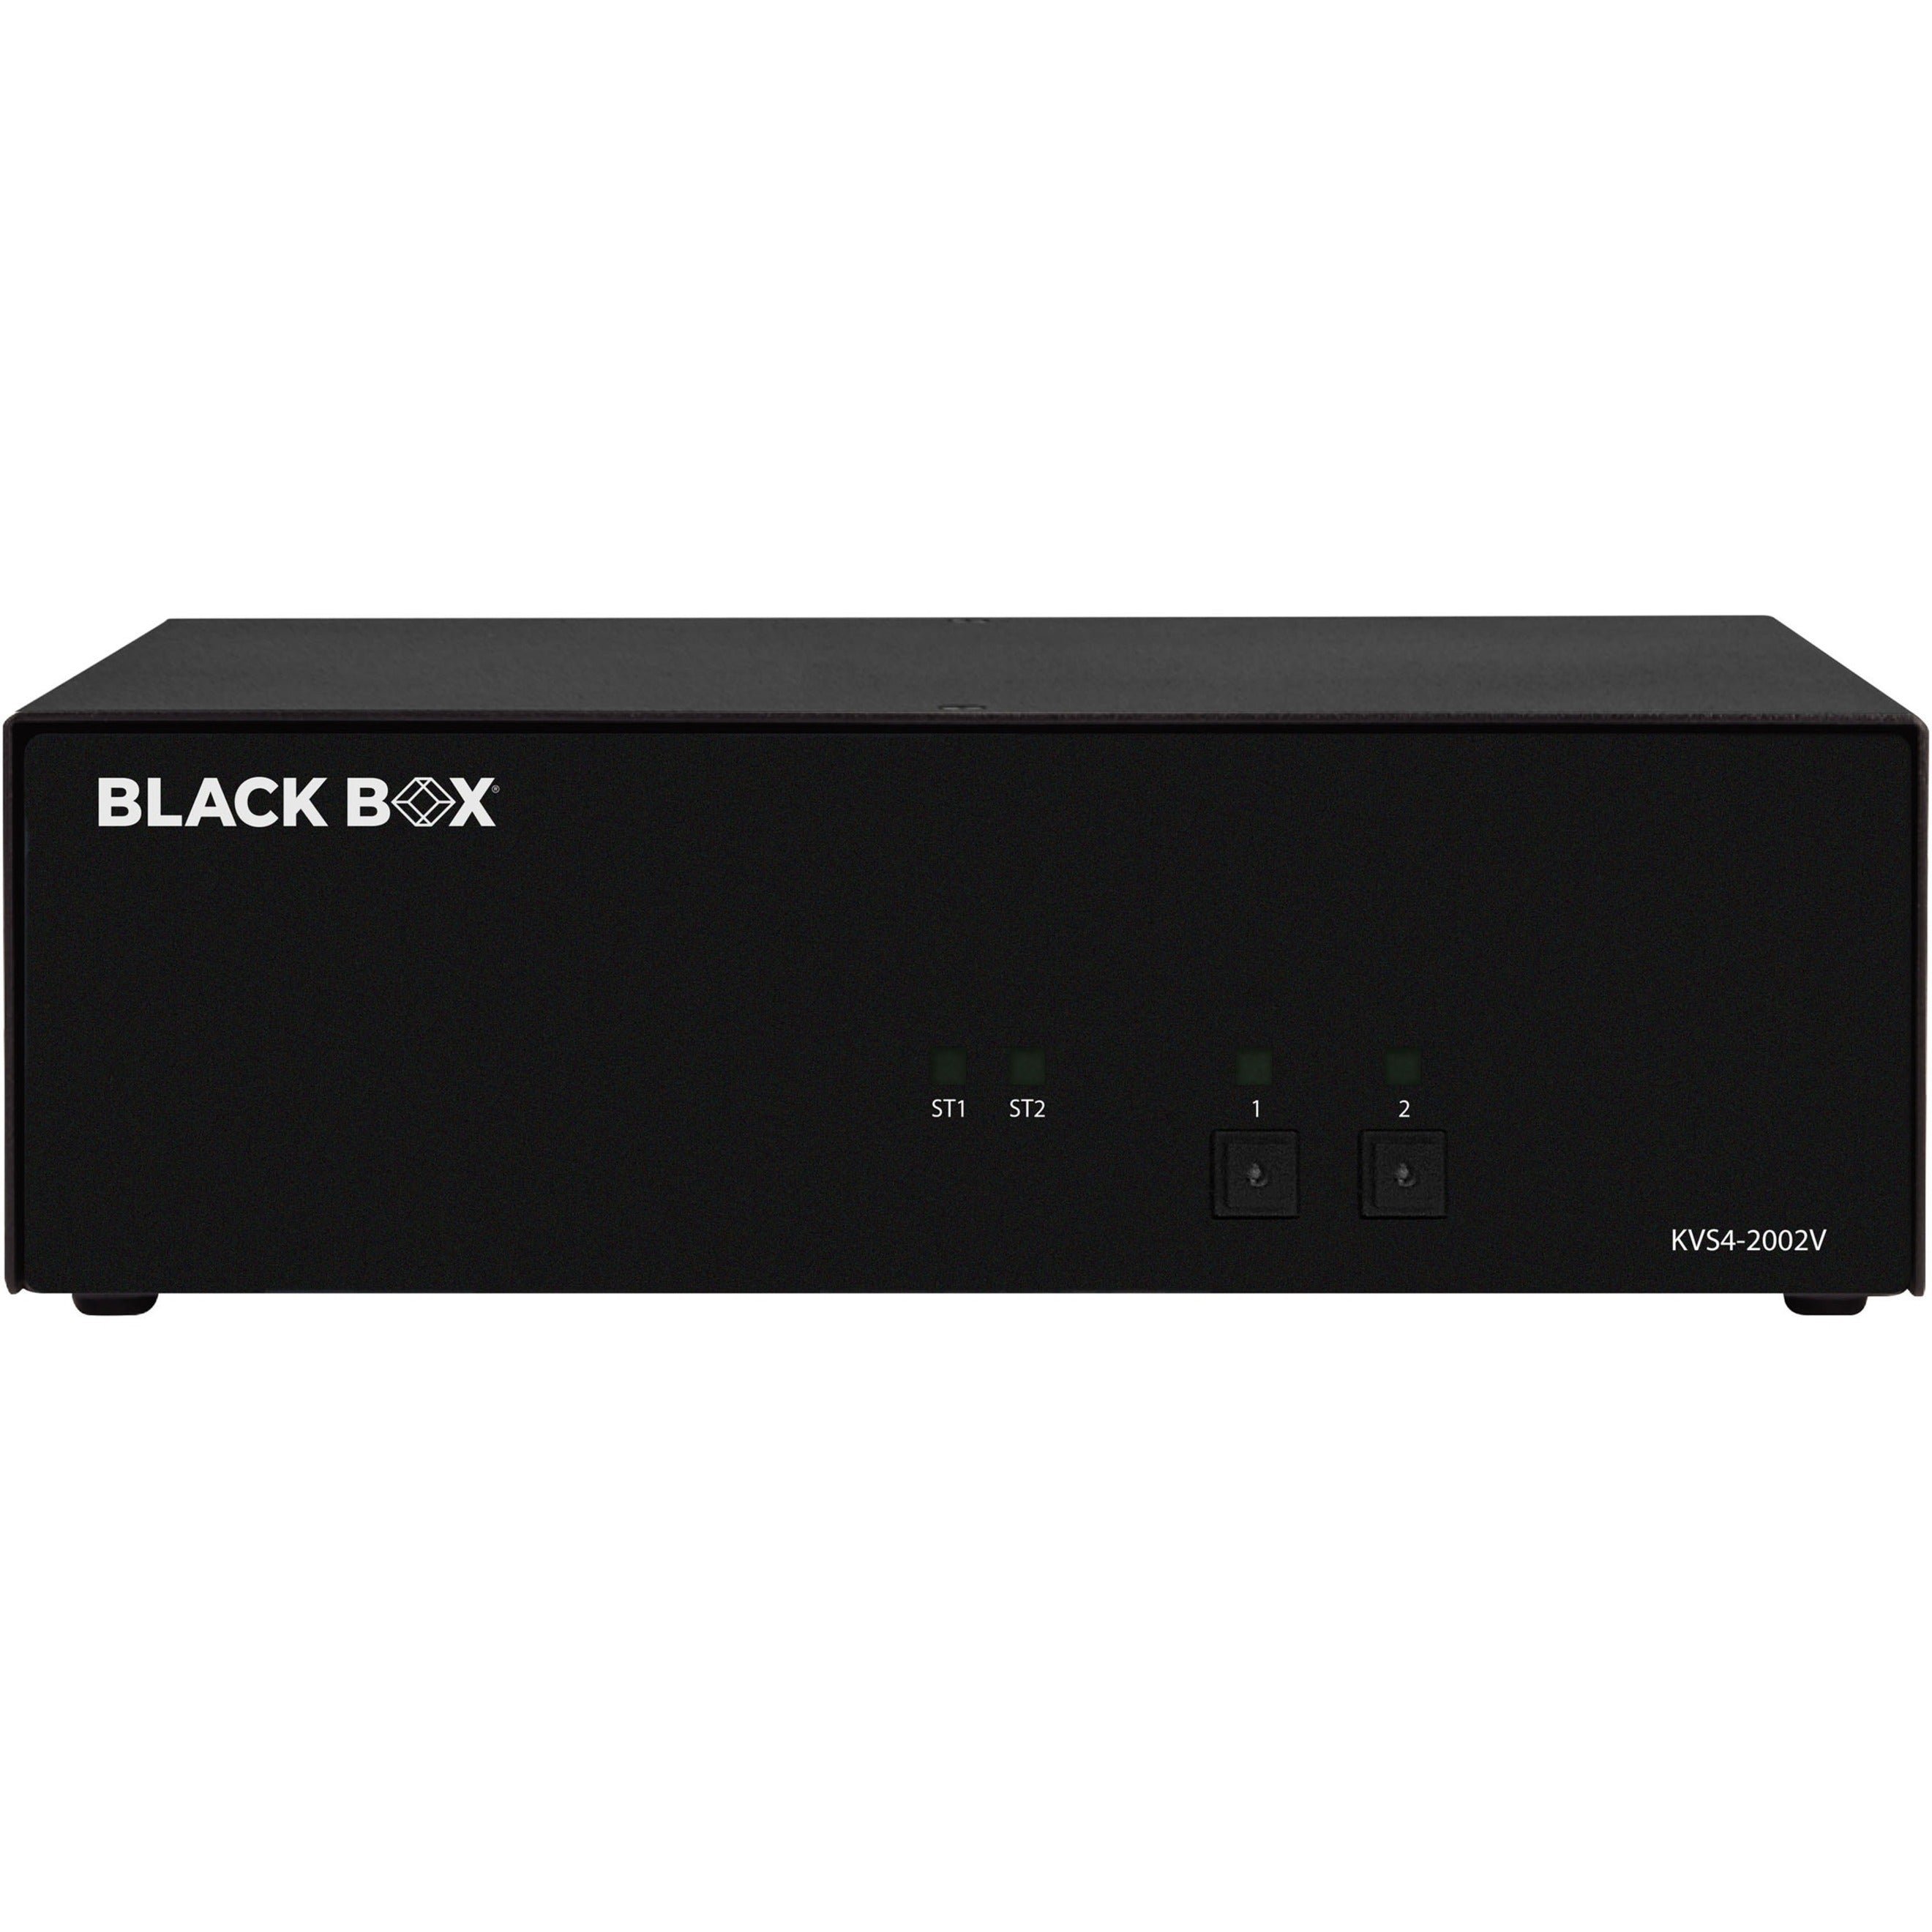 ブラックボックス KVS4-2002V セキュアKVMスイッチ - ディスプレイポート、4 USBポート、6ディスプレイポート、3840 x 2160解像度、1年保証